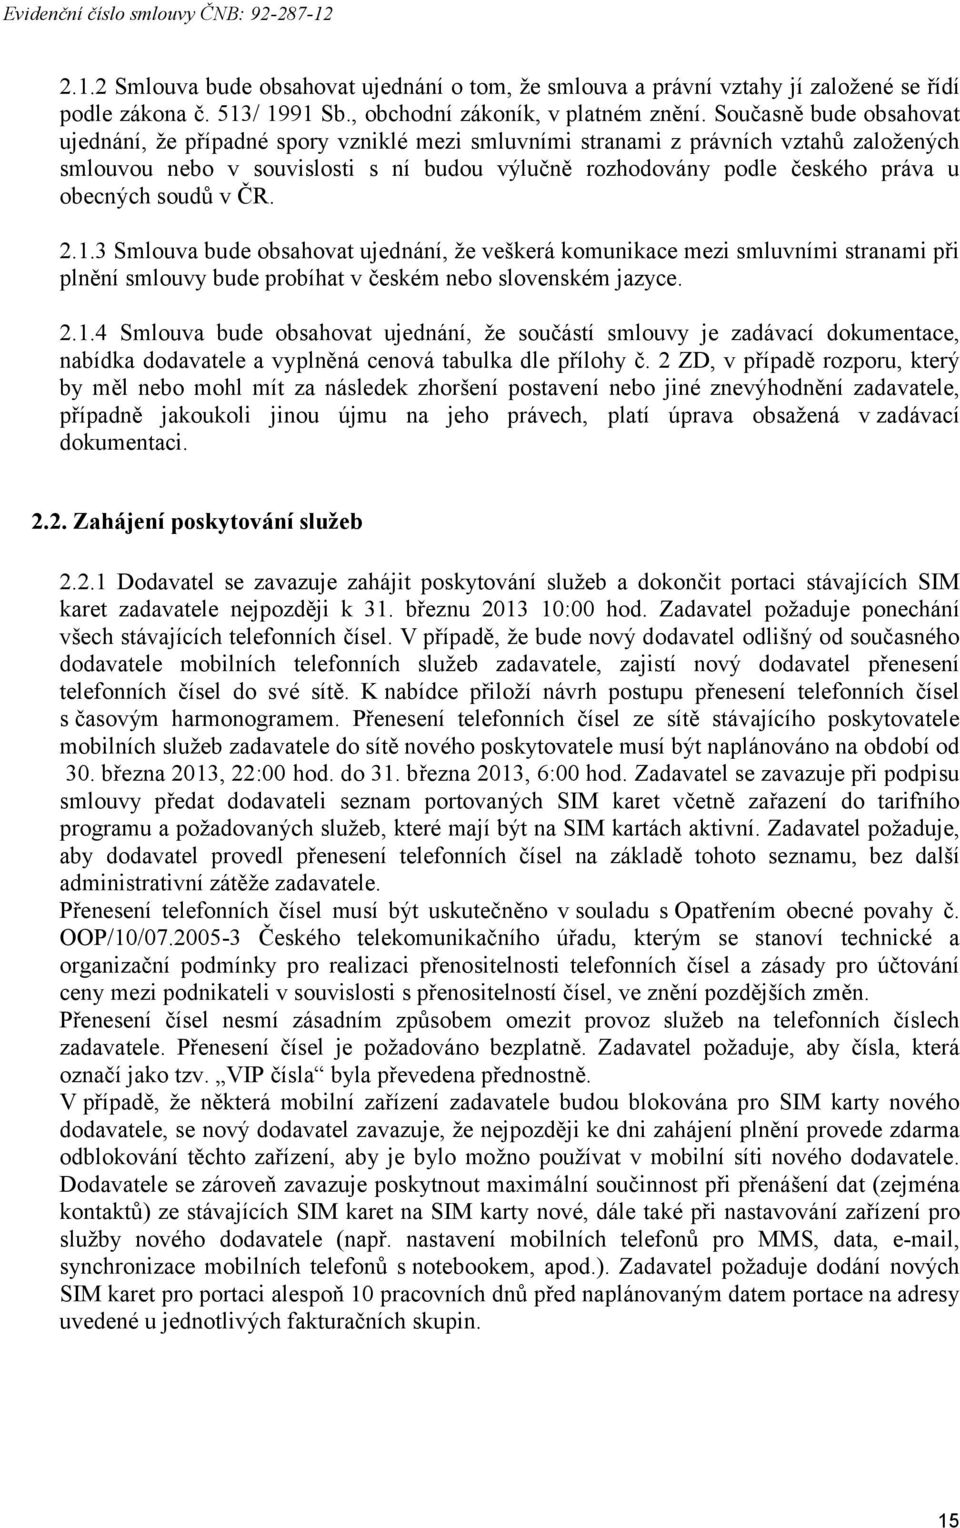 obecných soudů v ČR. 2.1.3 Smlouva bude obsahovat ujednání, že veškerá komunikace mezi smluvními stranami při plnění smlouvy bude probíhat v českém nebo slovenském jazyce. 2.1.4 Smlouva bude obsahovat ujednání, že součástí smlouvy je zadávací dokumentace, nabídka dodavatele a vyplněná cenová tabulka dle přílohy č.